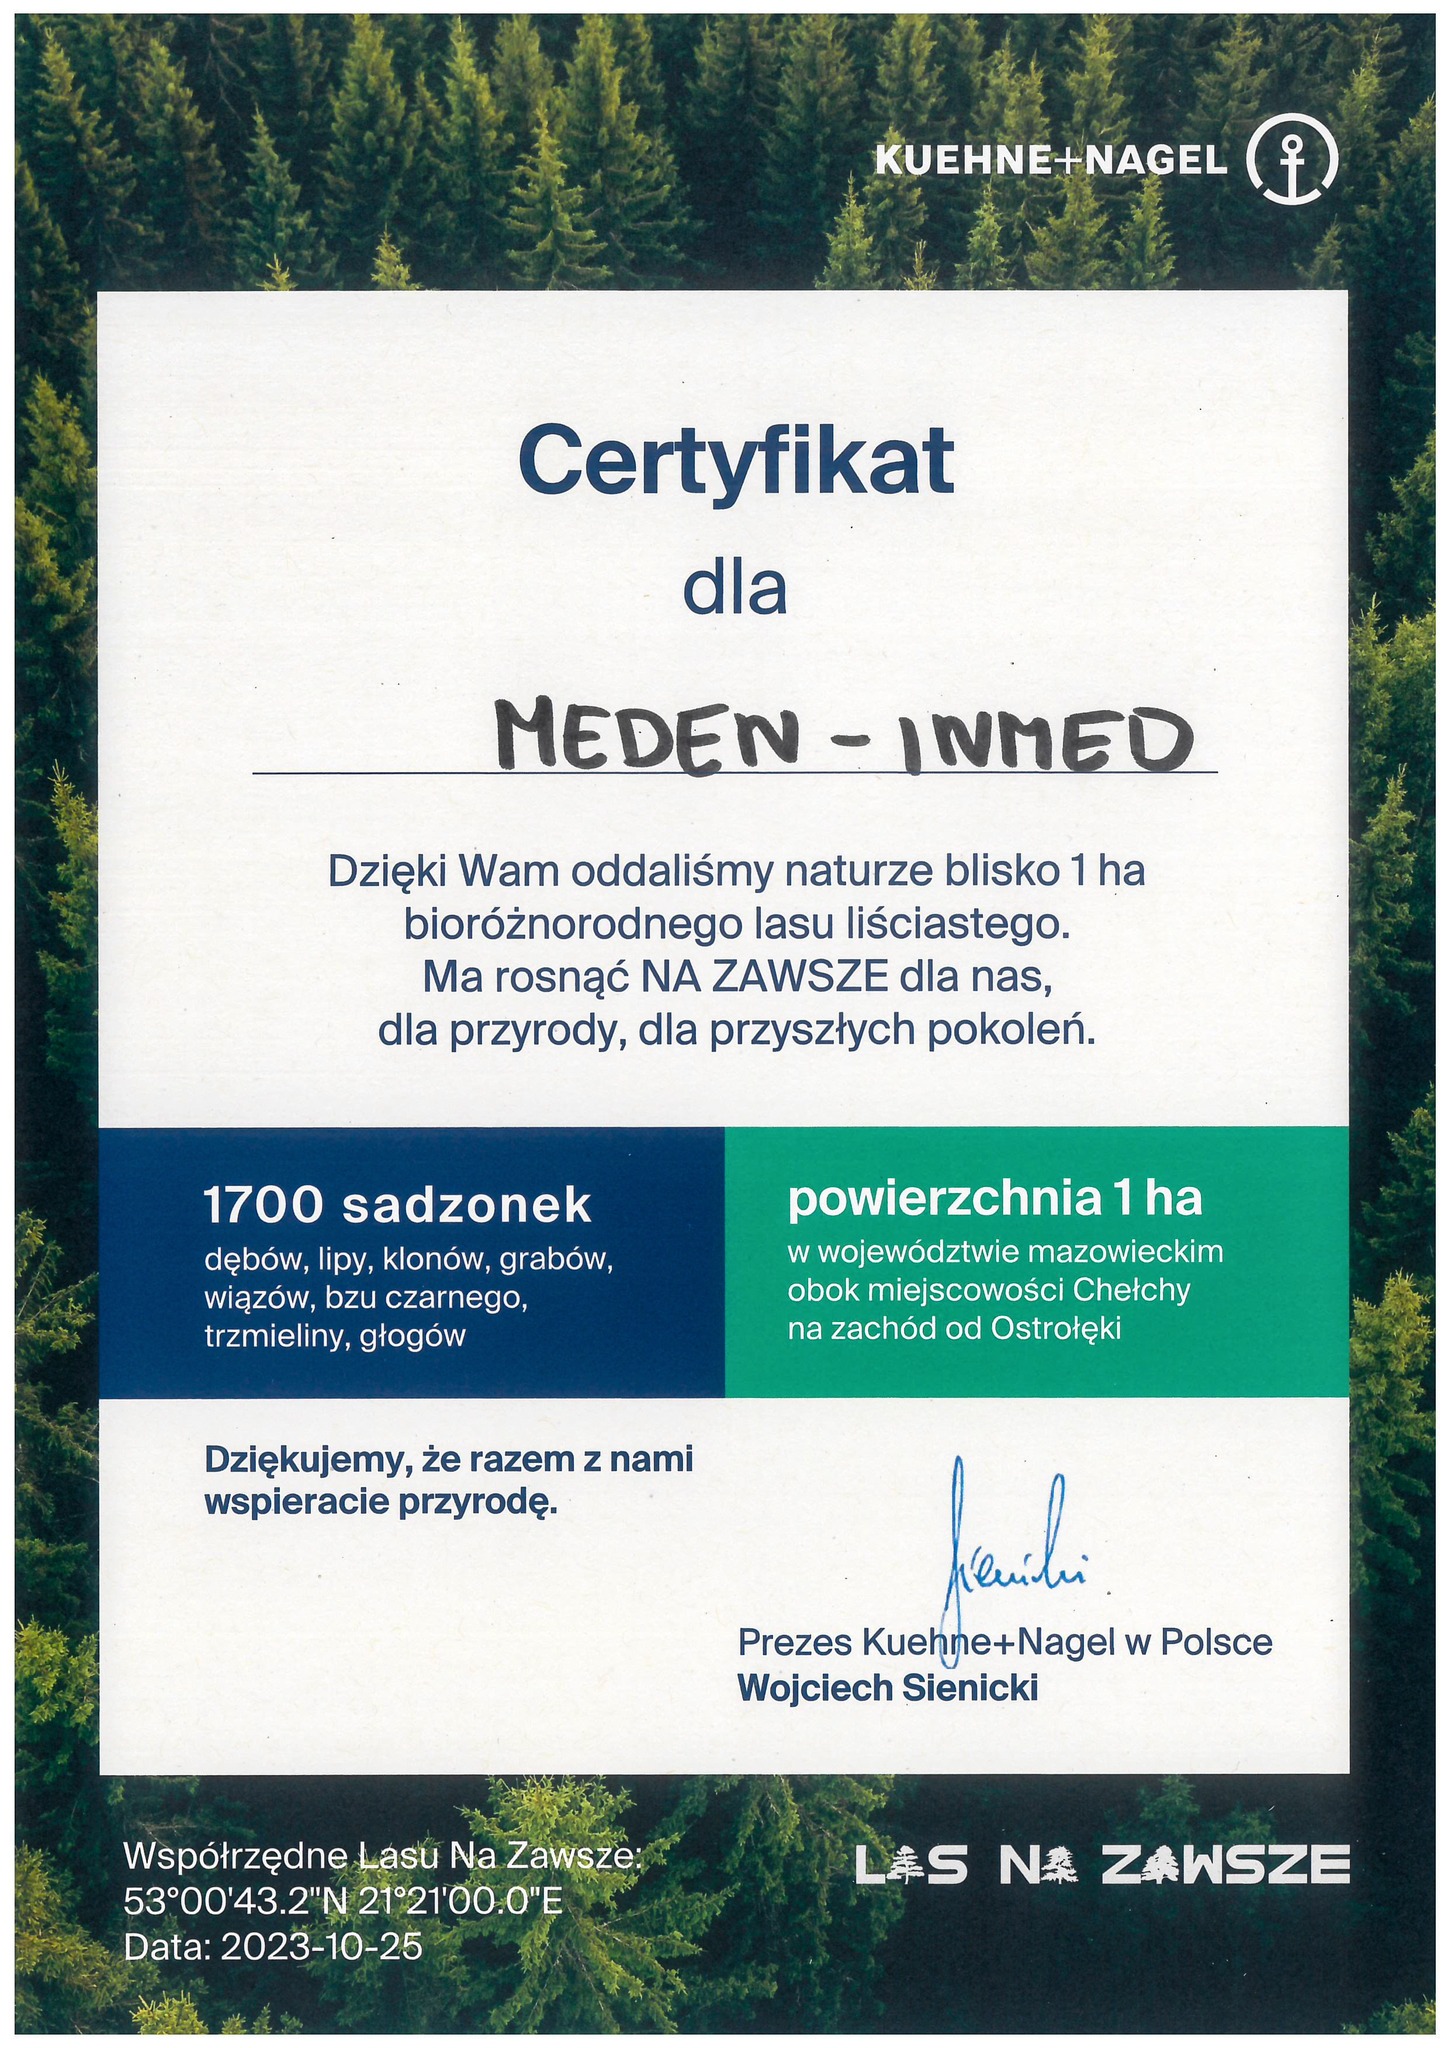 Certyfikat Kuehne+Nagel dla Meden-Inmed